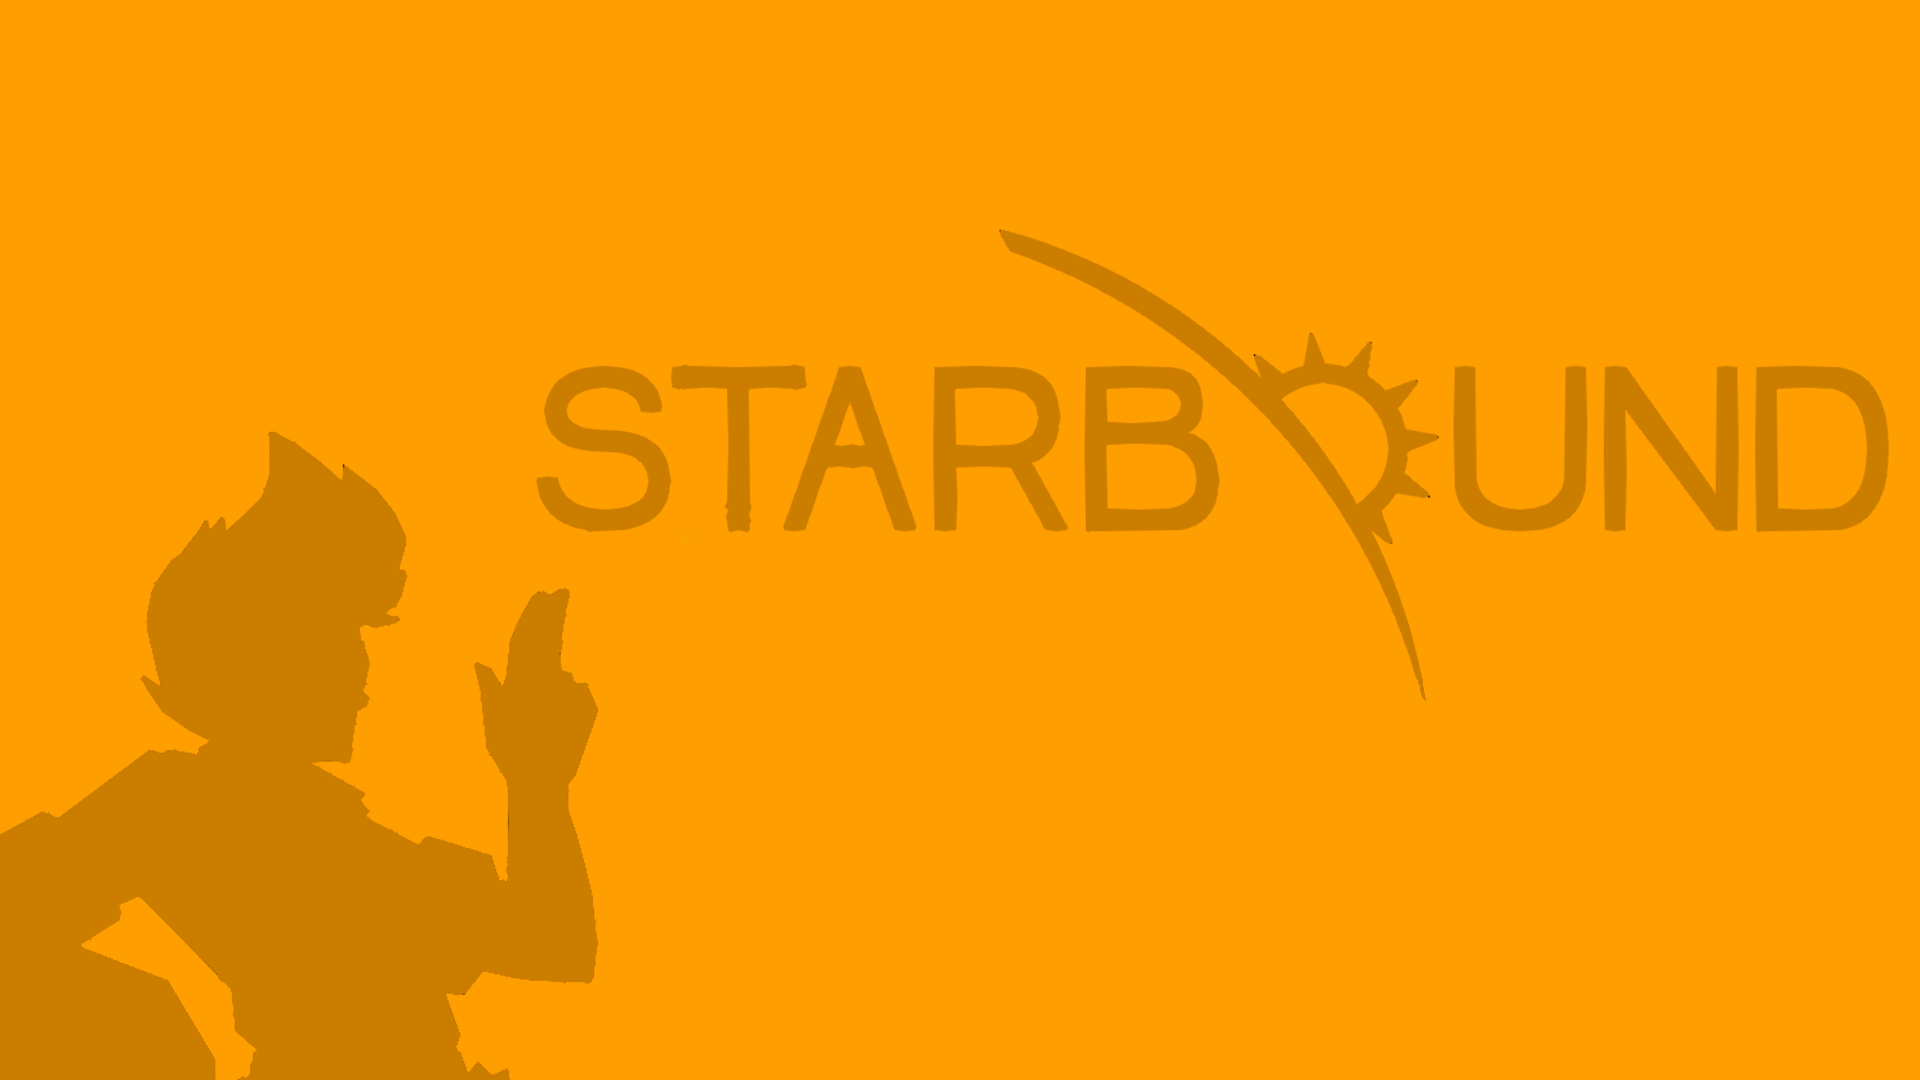 Starbound Minimalism Orange Background 1920x1080